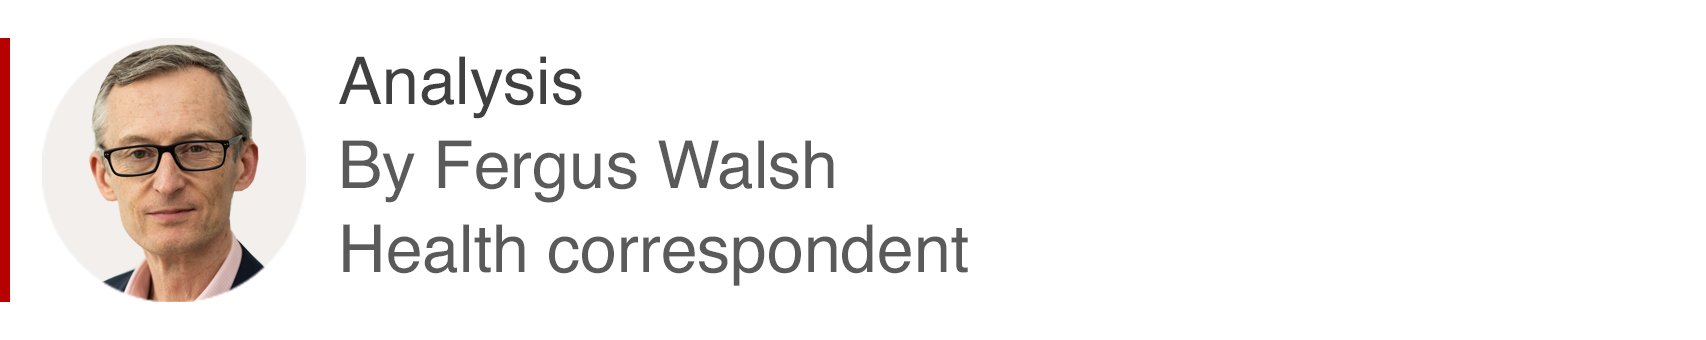 Analisis Fergus Walsh, koresponden isu kesehatan